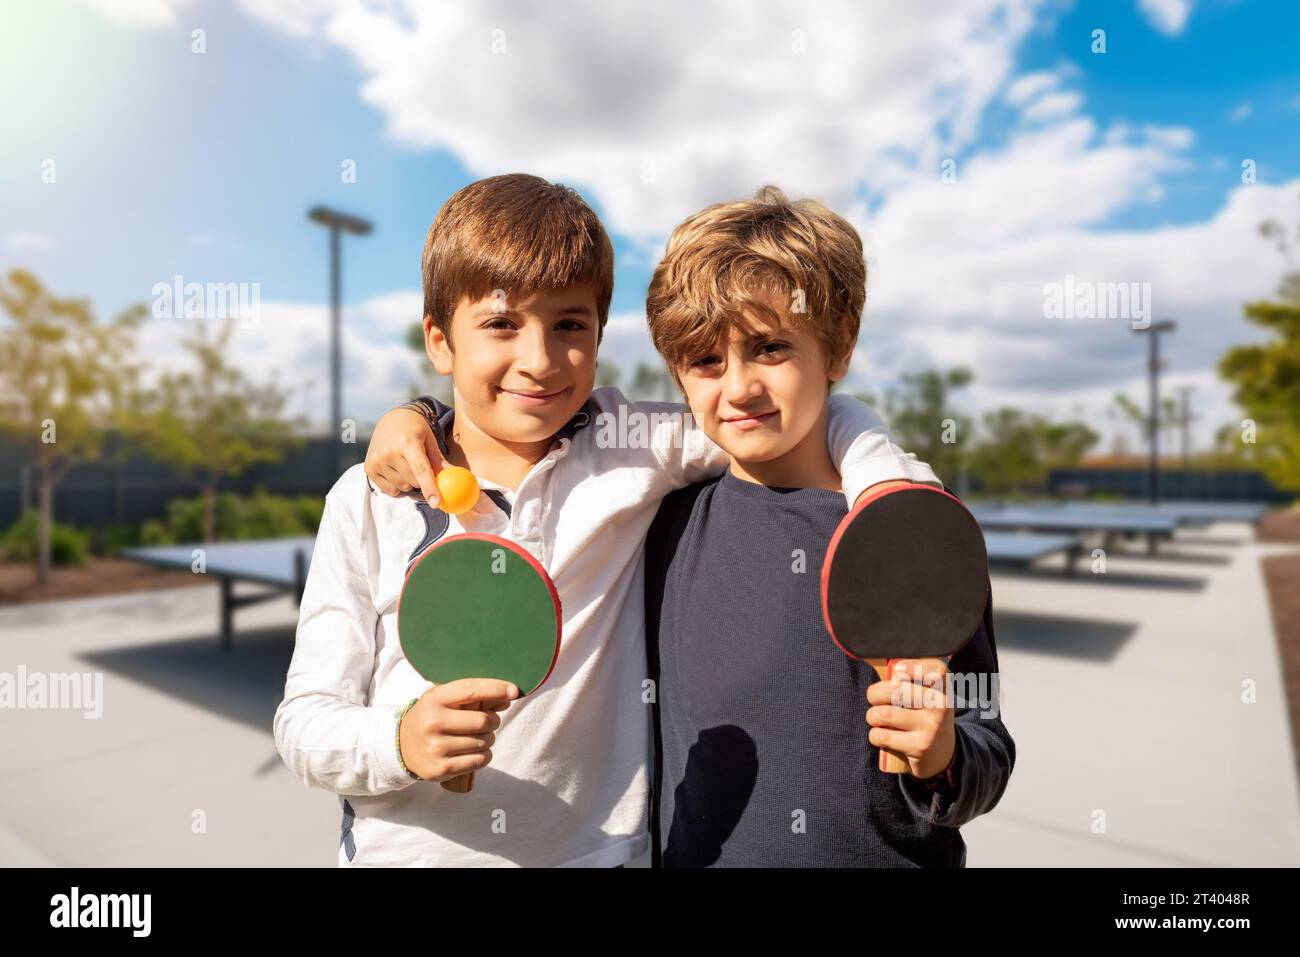 Deux enfants avec des pagaies de ping-pong jouant dans des installations sportives extérieures. L'esprit sportif de la jeunesse. Activités extrascolaires pour les enfants Banque D'Images